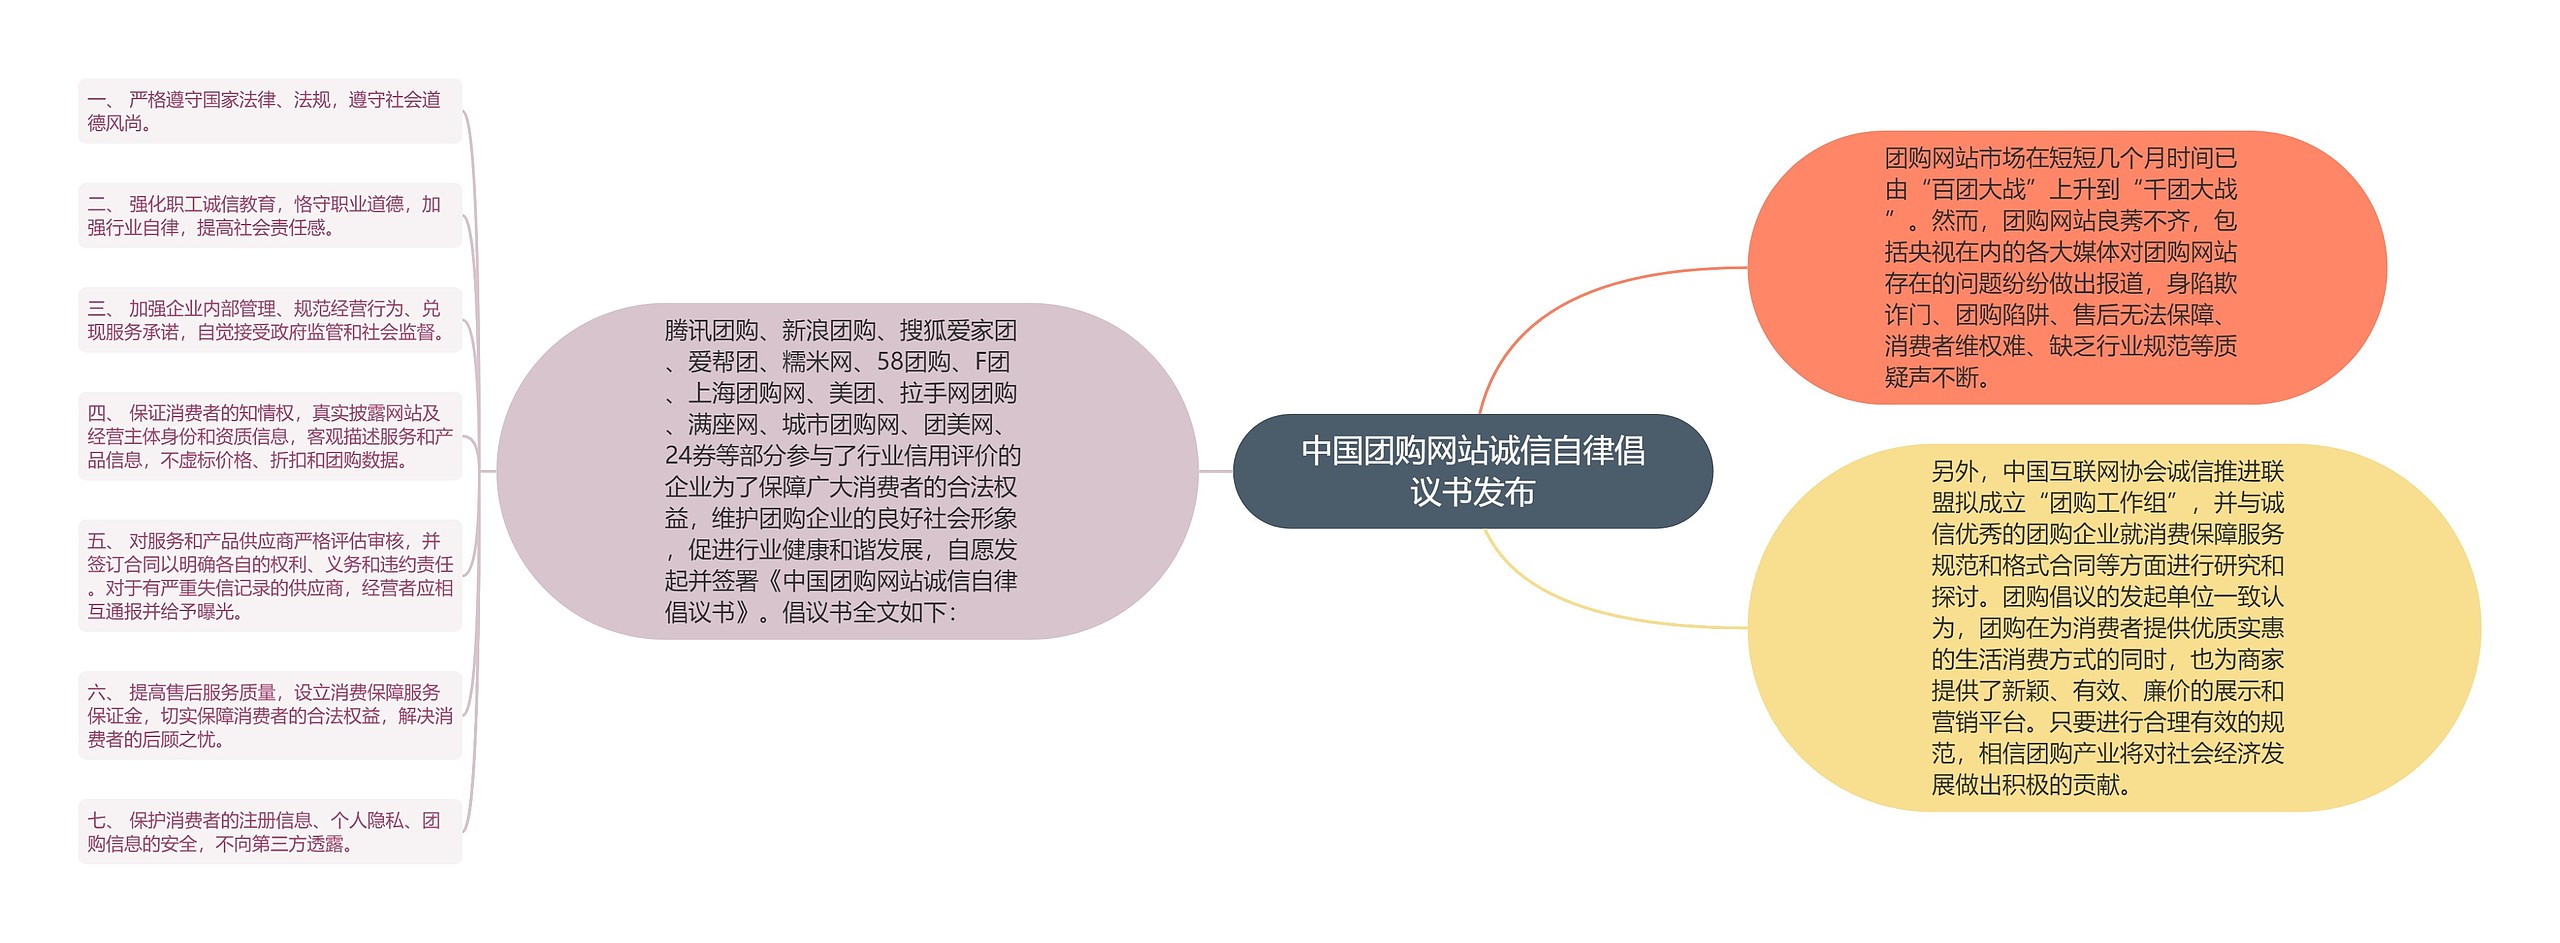 中国团购网站诚信自律倡议书发布思维导图